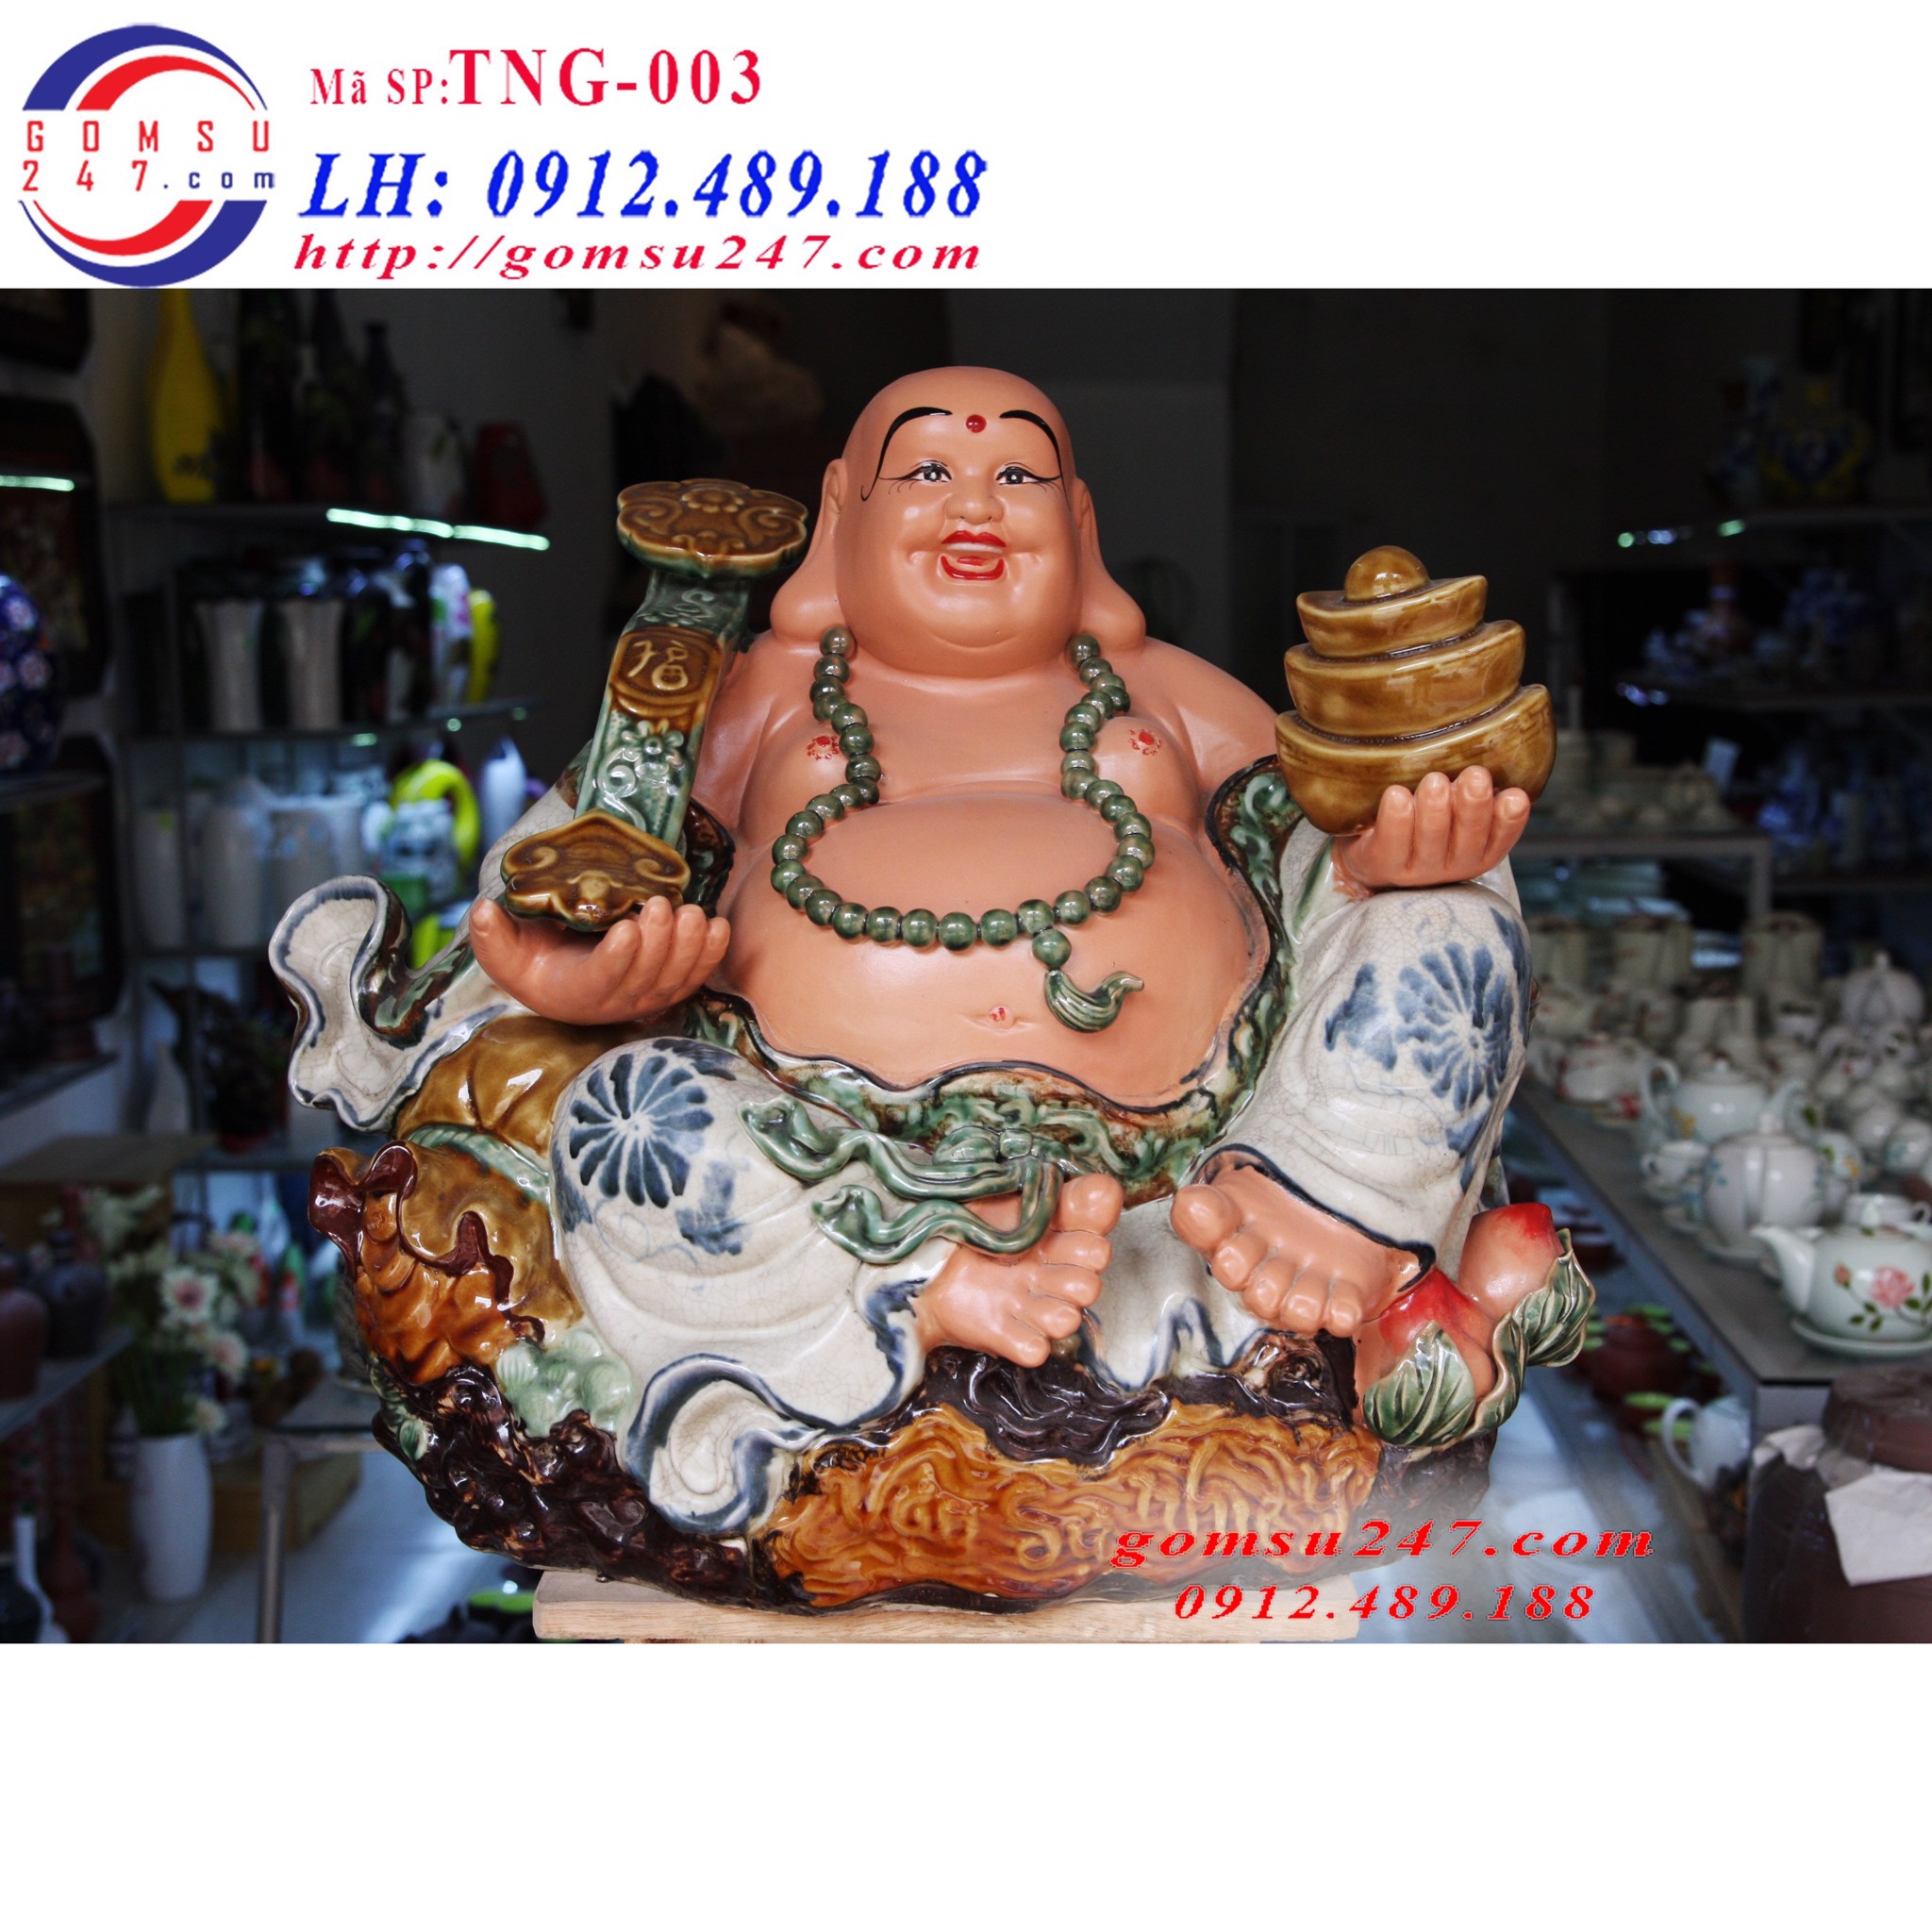 Cung cấp các sản phẩm gốm sứ Bát Tràng tại Hà Nội